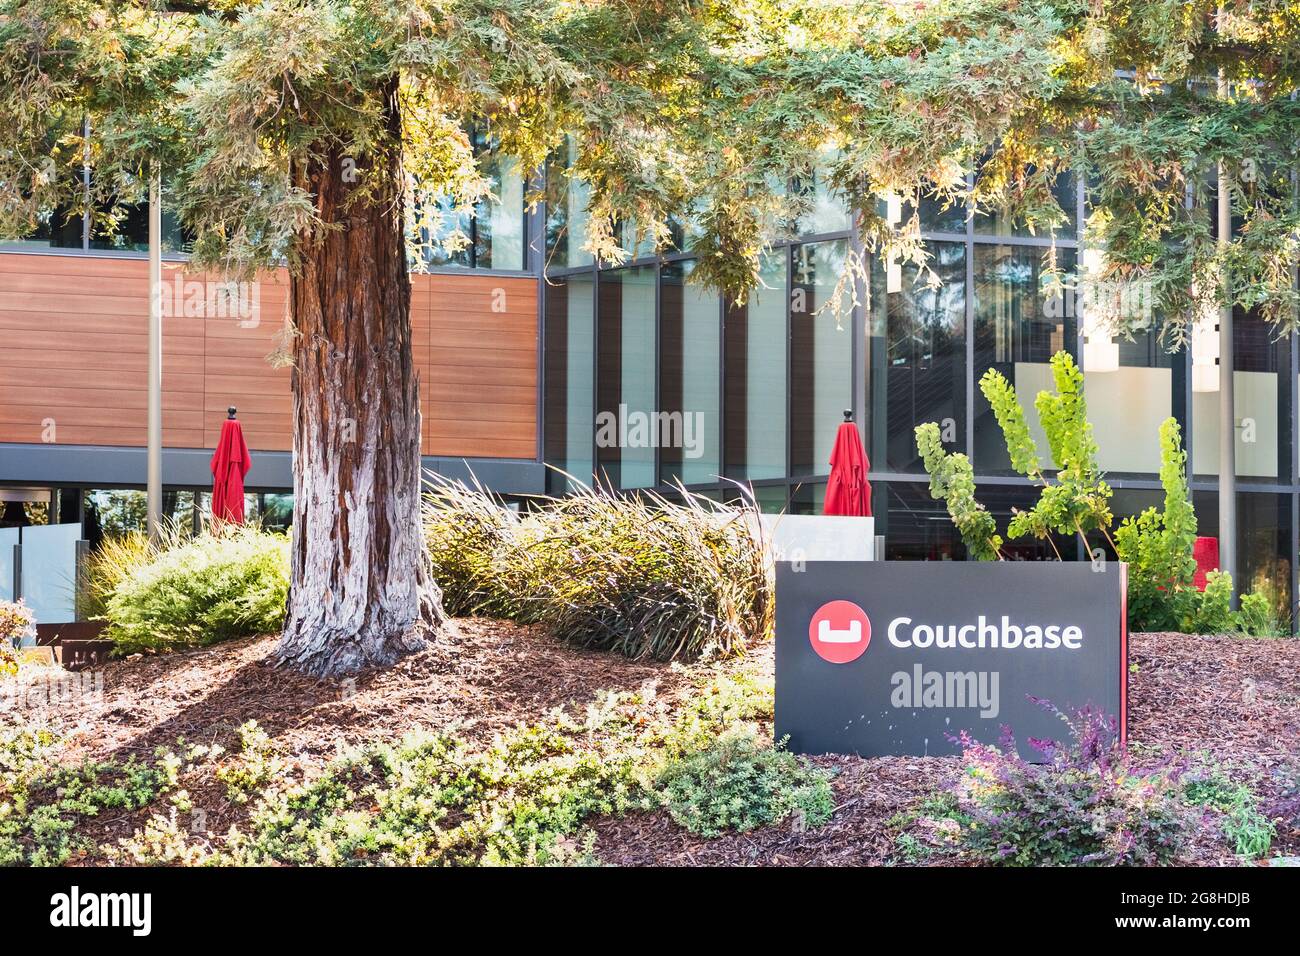 Sep 24, 2020 Santa Clara / CA / USA - Sede central de Couchbase en Silicon Valley; Couchbase Inc ofrece base de datos en nube para aplicaciones empresariales Foto de stock